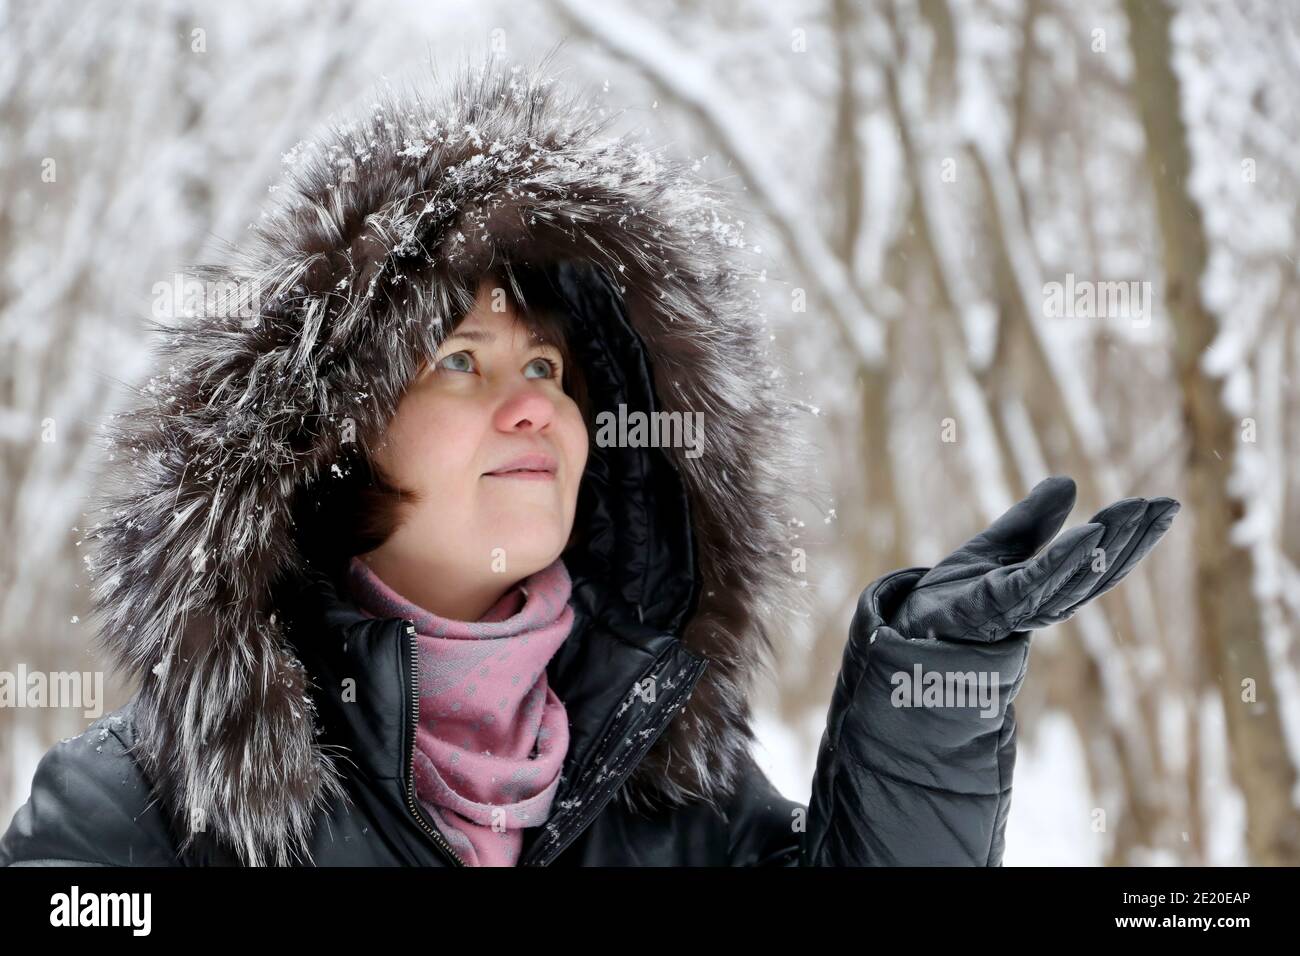 Glückliche Frau in Pelzhaube genießen das verschneite Wetter, fängt Schneeflocken mit ihren Händen. Schneefall im Winterpark, kalte Jahreszeit Stockfoto